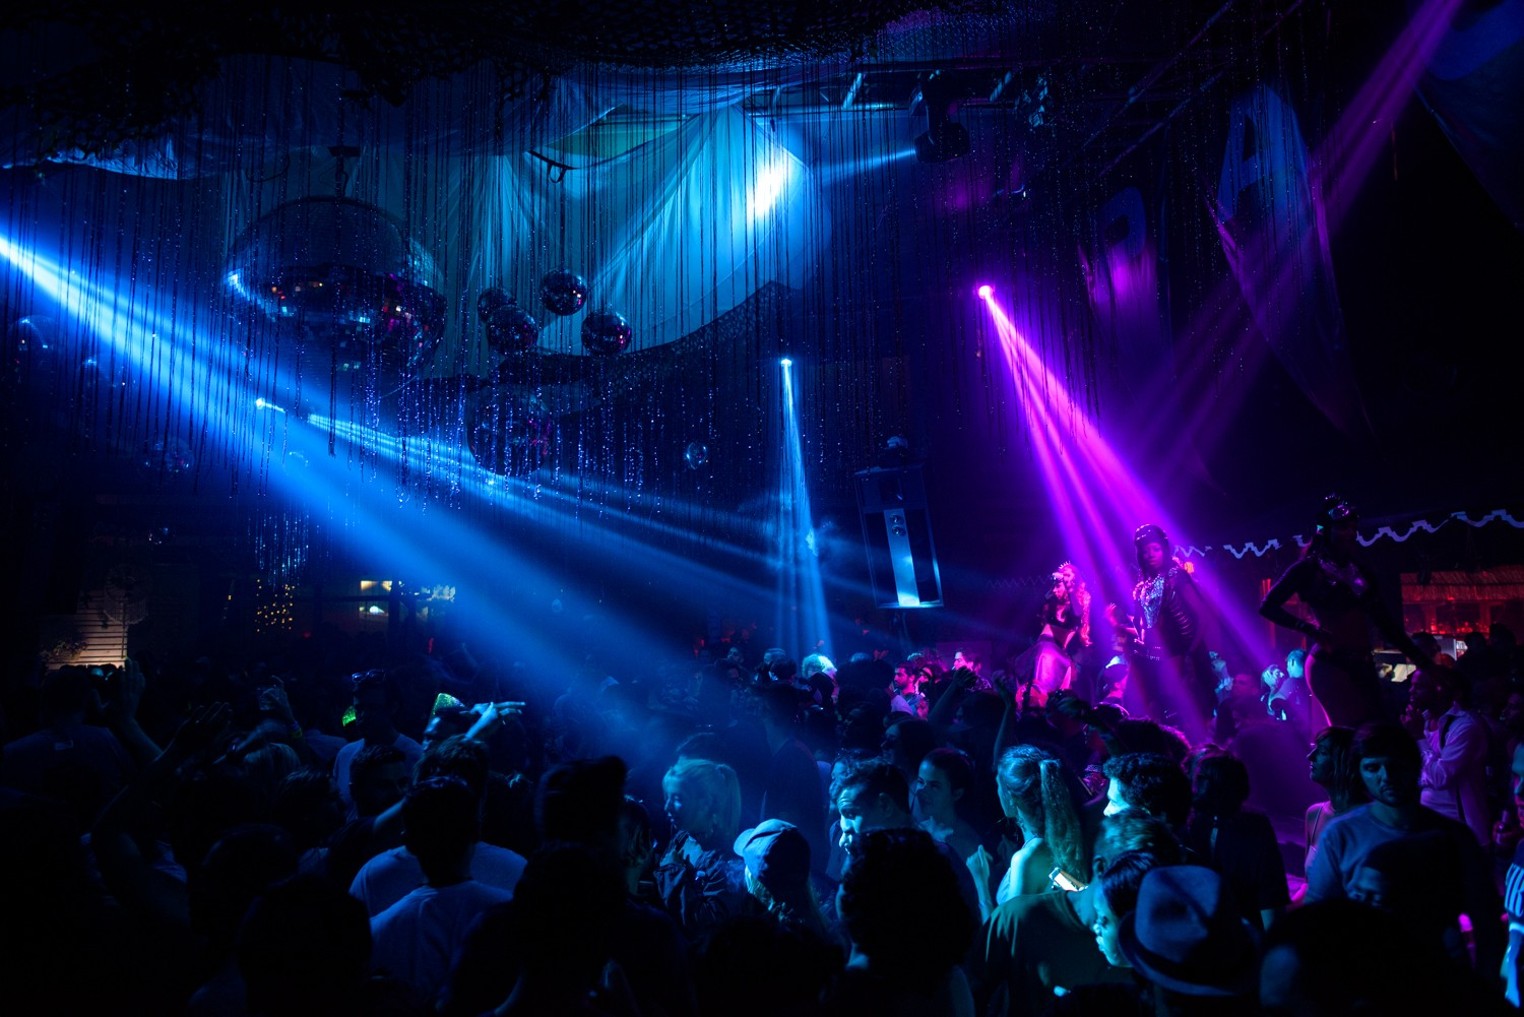 Space nightclub Miami